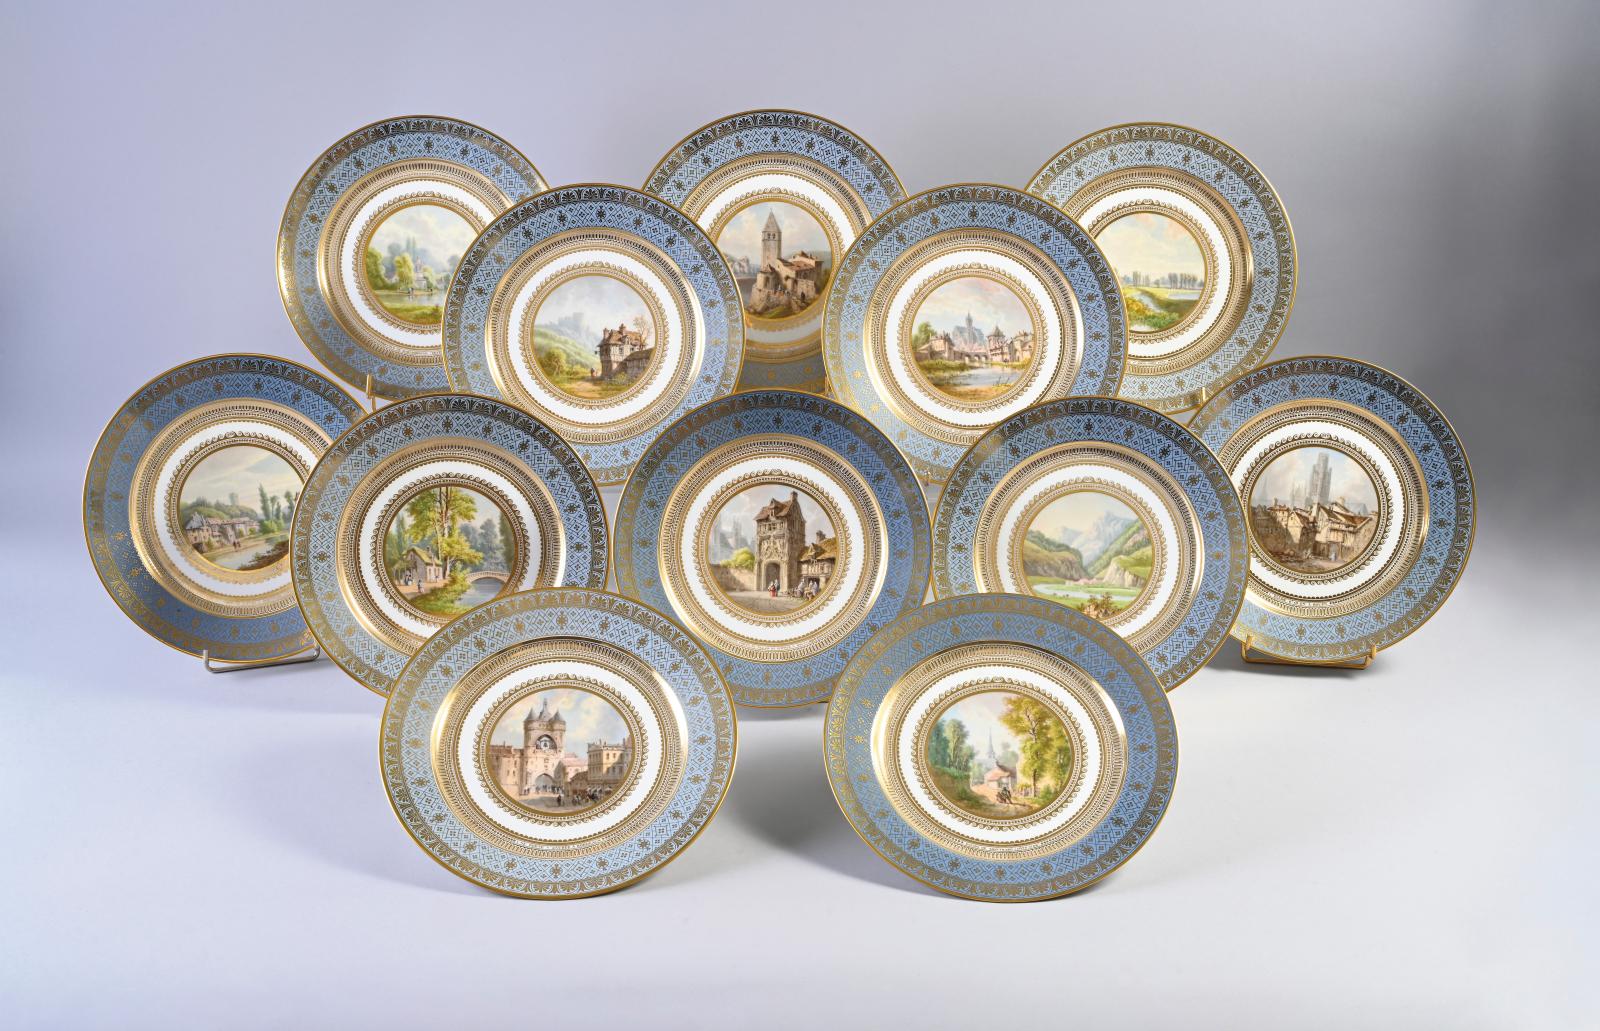 Vues royales de France en porcelaine de Sèvres